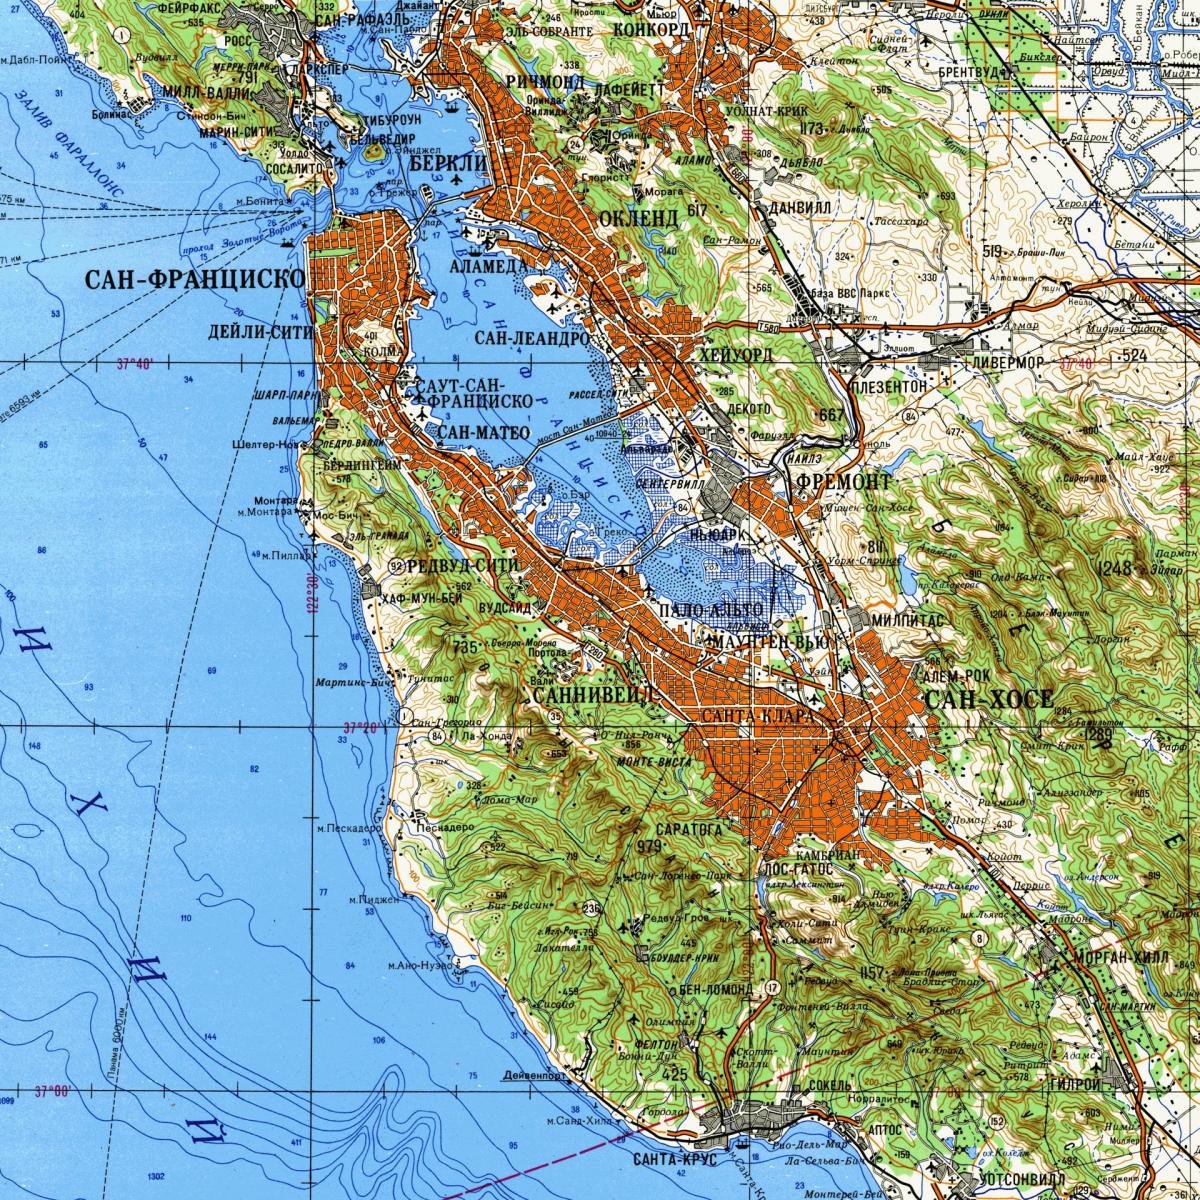 Області затоки Сан-Франциско топографічній карті